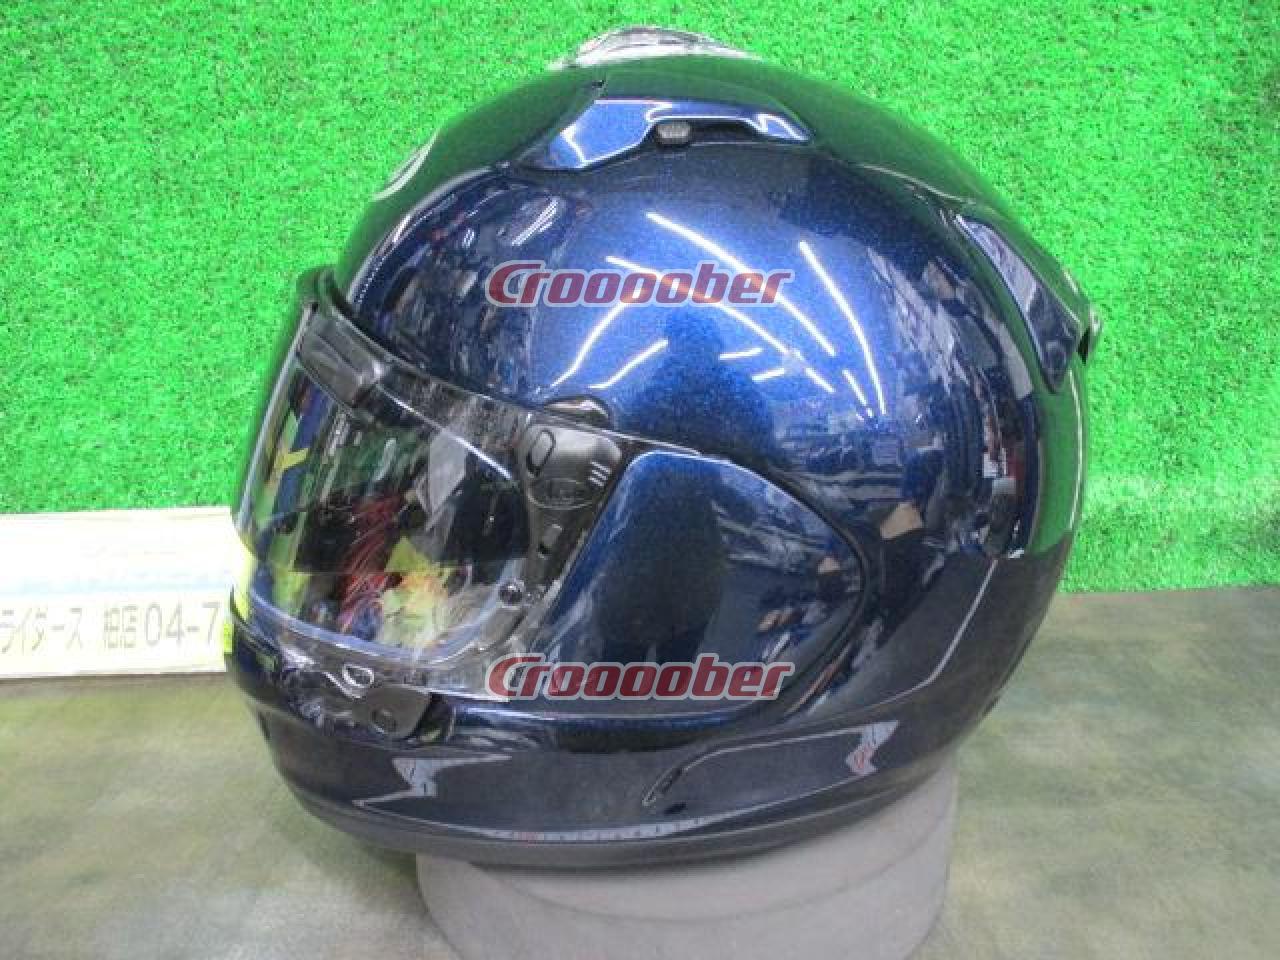 Arai(アライ) XD フルフェイスヘルメット グラスブルー サイズM(57 